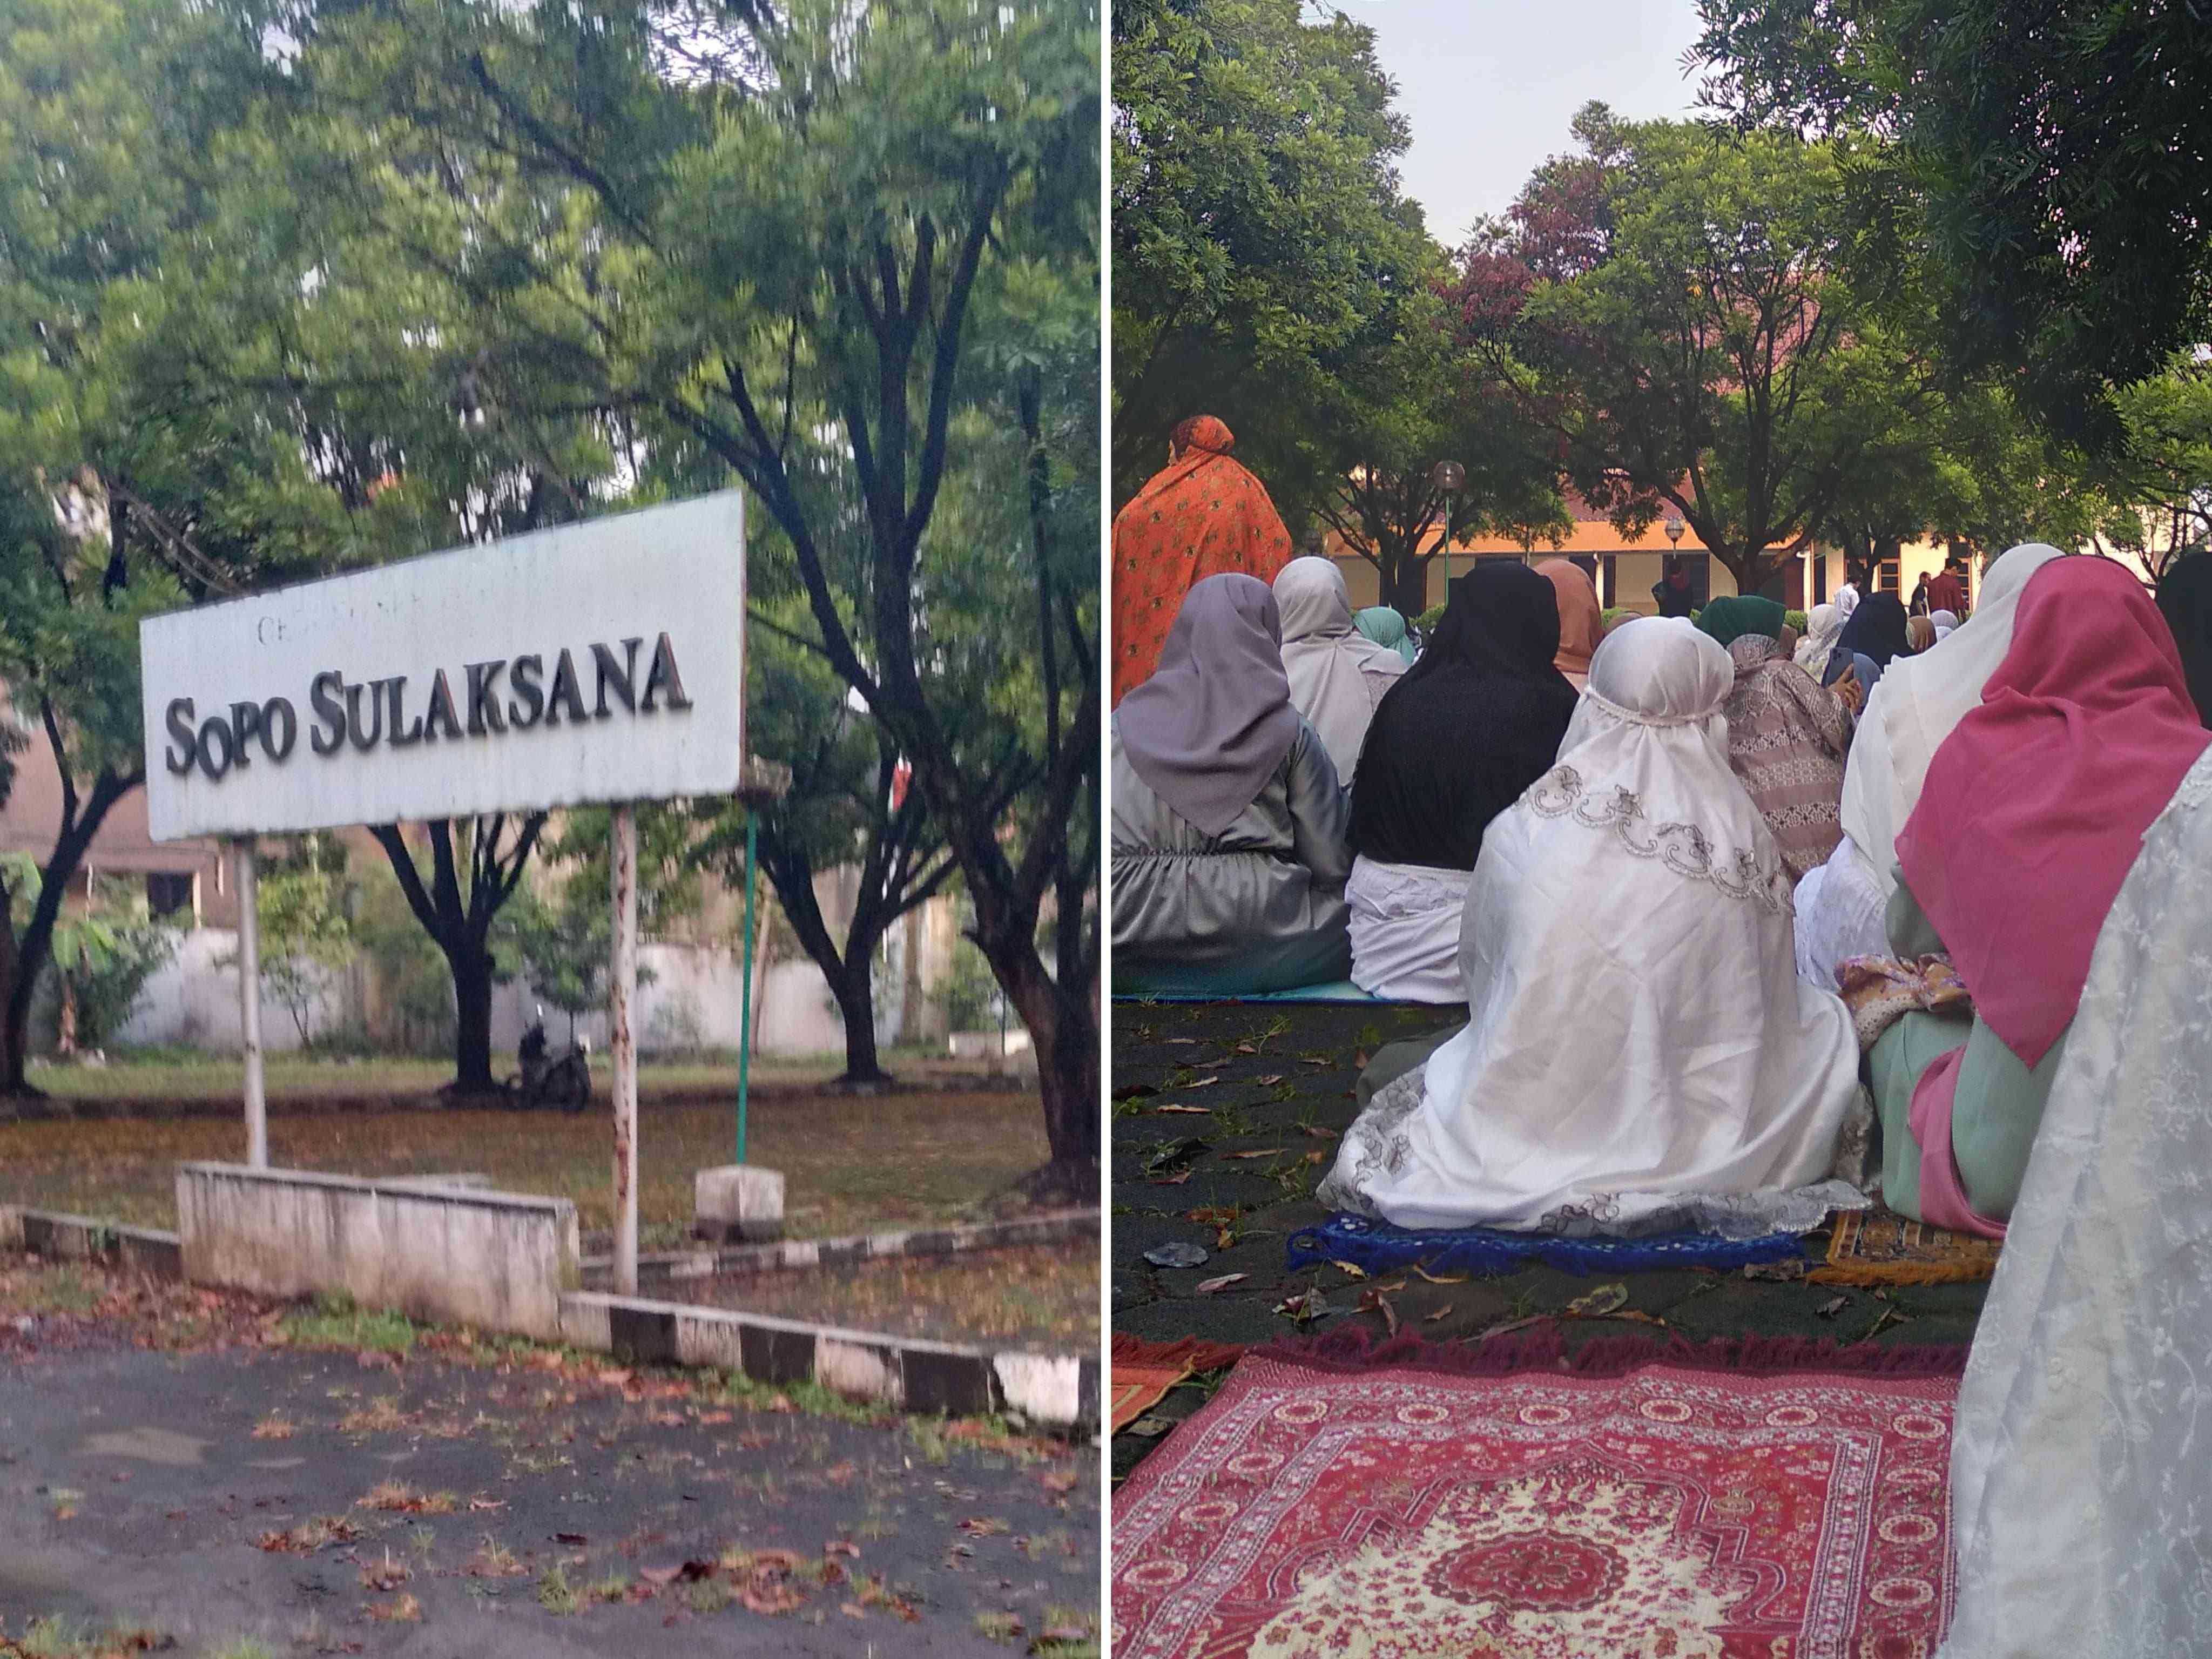 Sambutan oleh Ustaz Hendra dalam Menyambut Hari Raya Idul Fitri 1444H di Sopo Sulaksana, dan Pemaparan Tata Cara Solat Ied